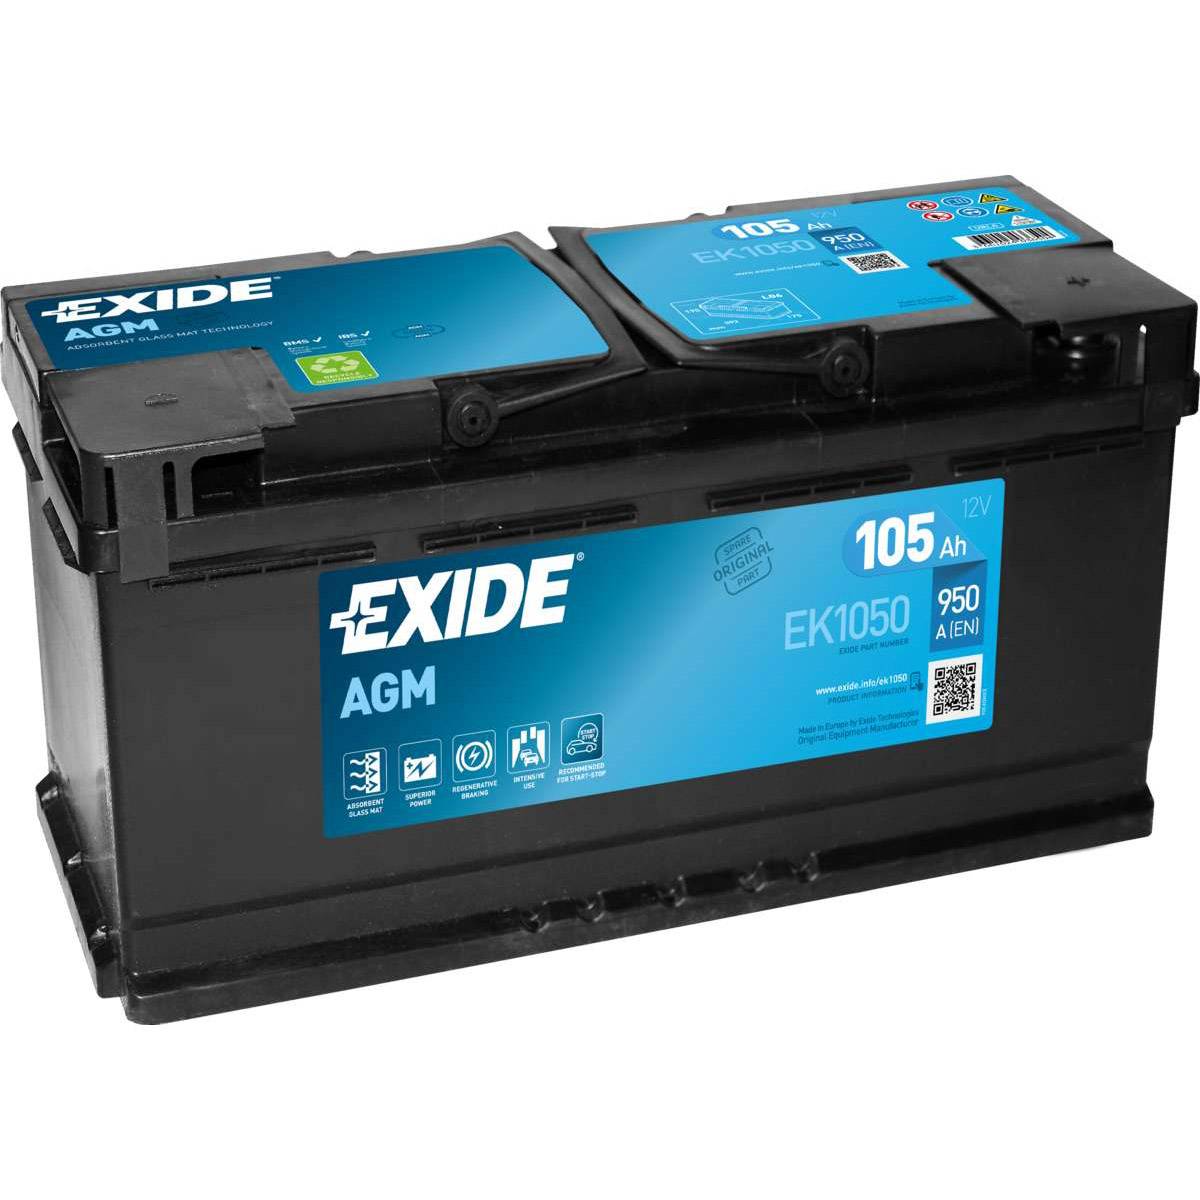 Exide EK1050 Start-Stop AGM 12V 105Ah 950A Autobatterie